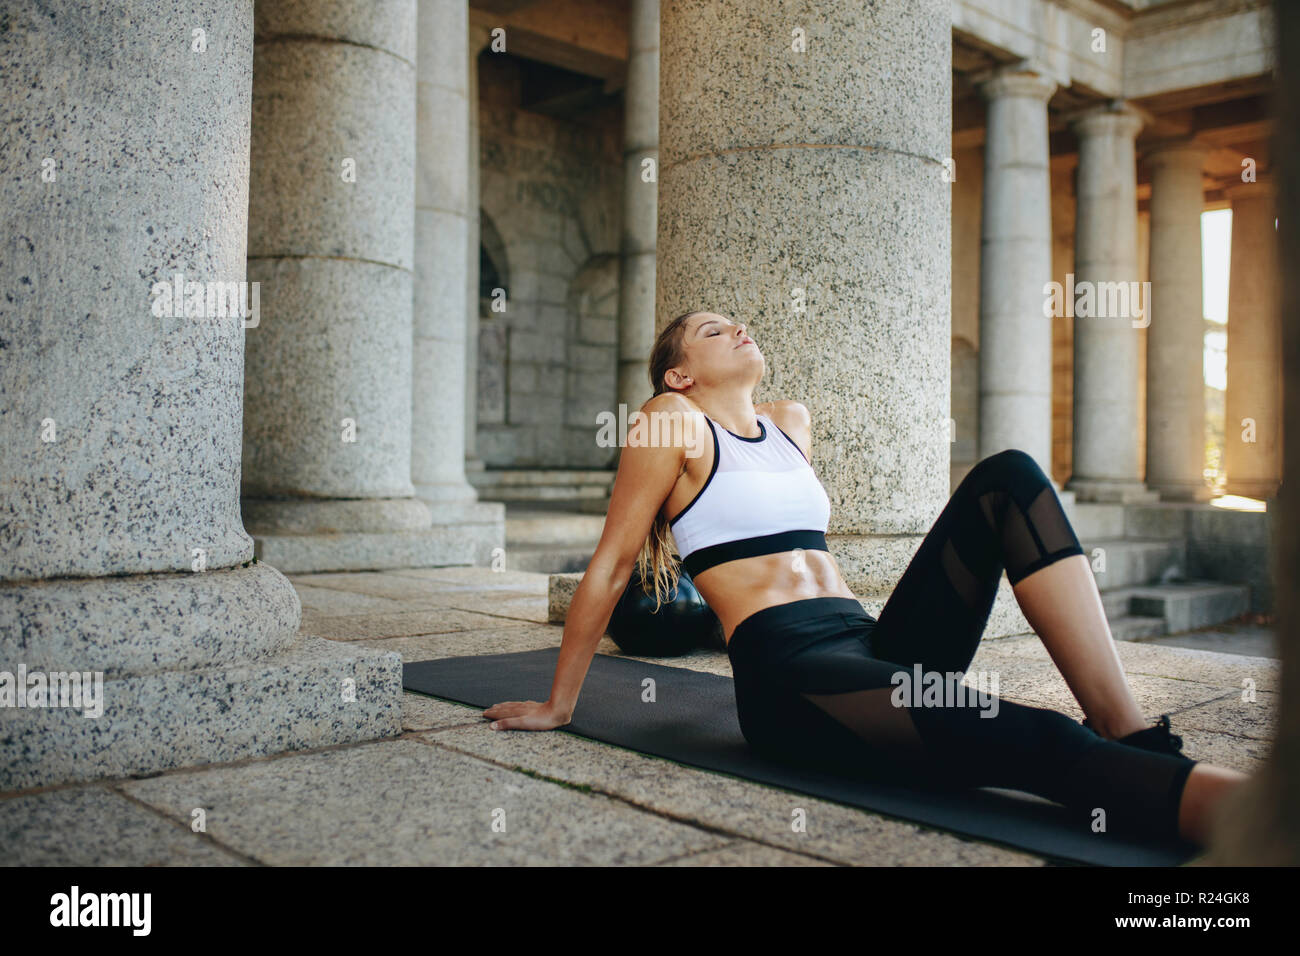 Fitness-Frau, die sich nach dem Training mit geschlossenen Augen auf einer Trainingsmatte entspannt. Weibliche Athletin, die Fitnesstraining macht, sitzt auf Yogamatte mit einem Medikament bal Stockfoto